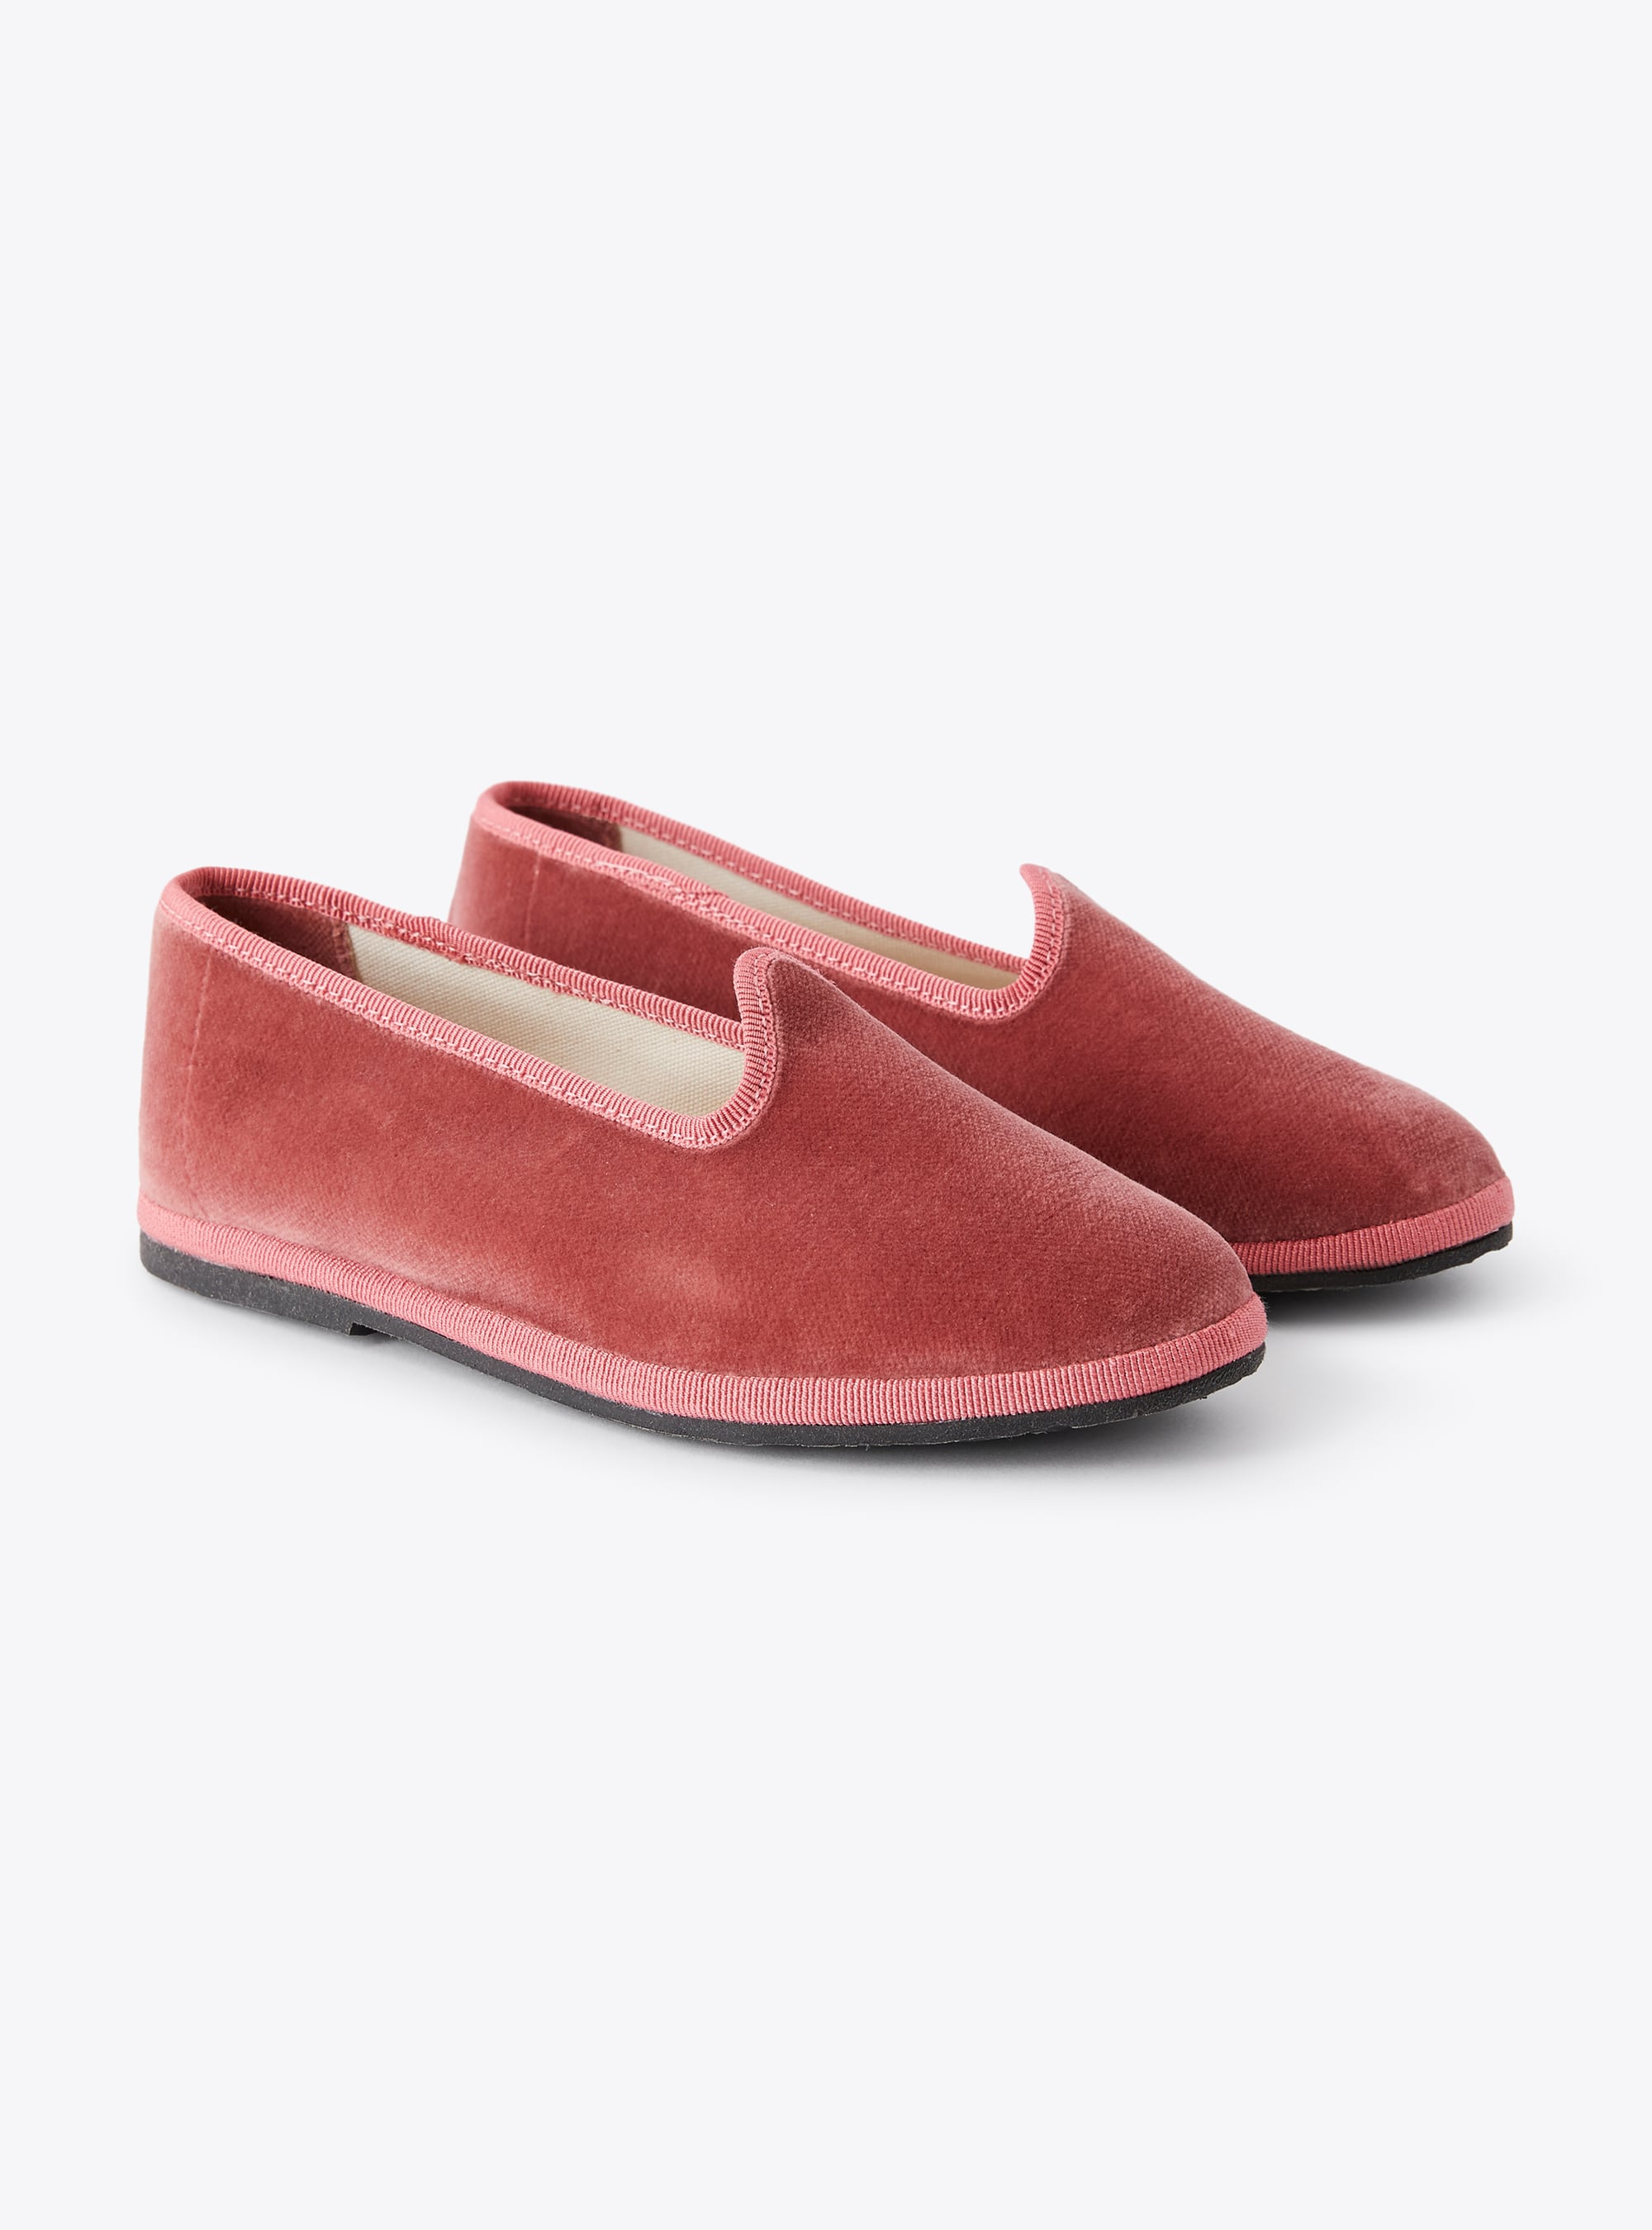 Slipper aus rosa Samt - Schuhe - Il Gufo